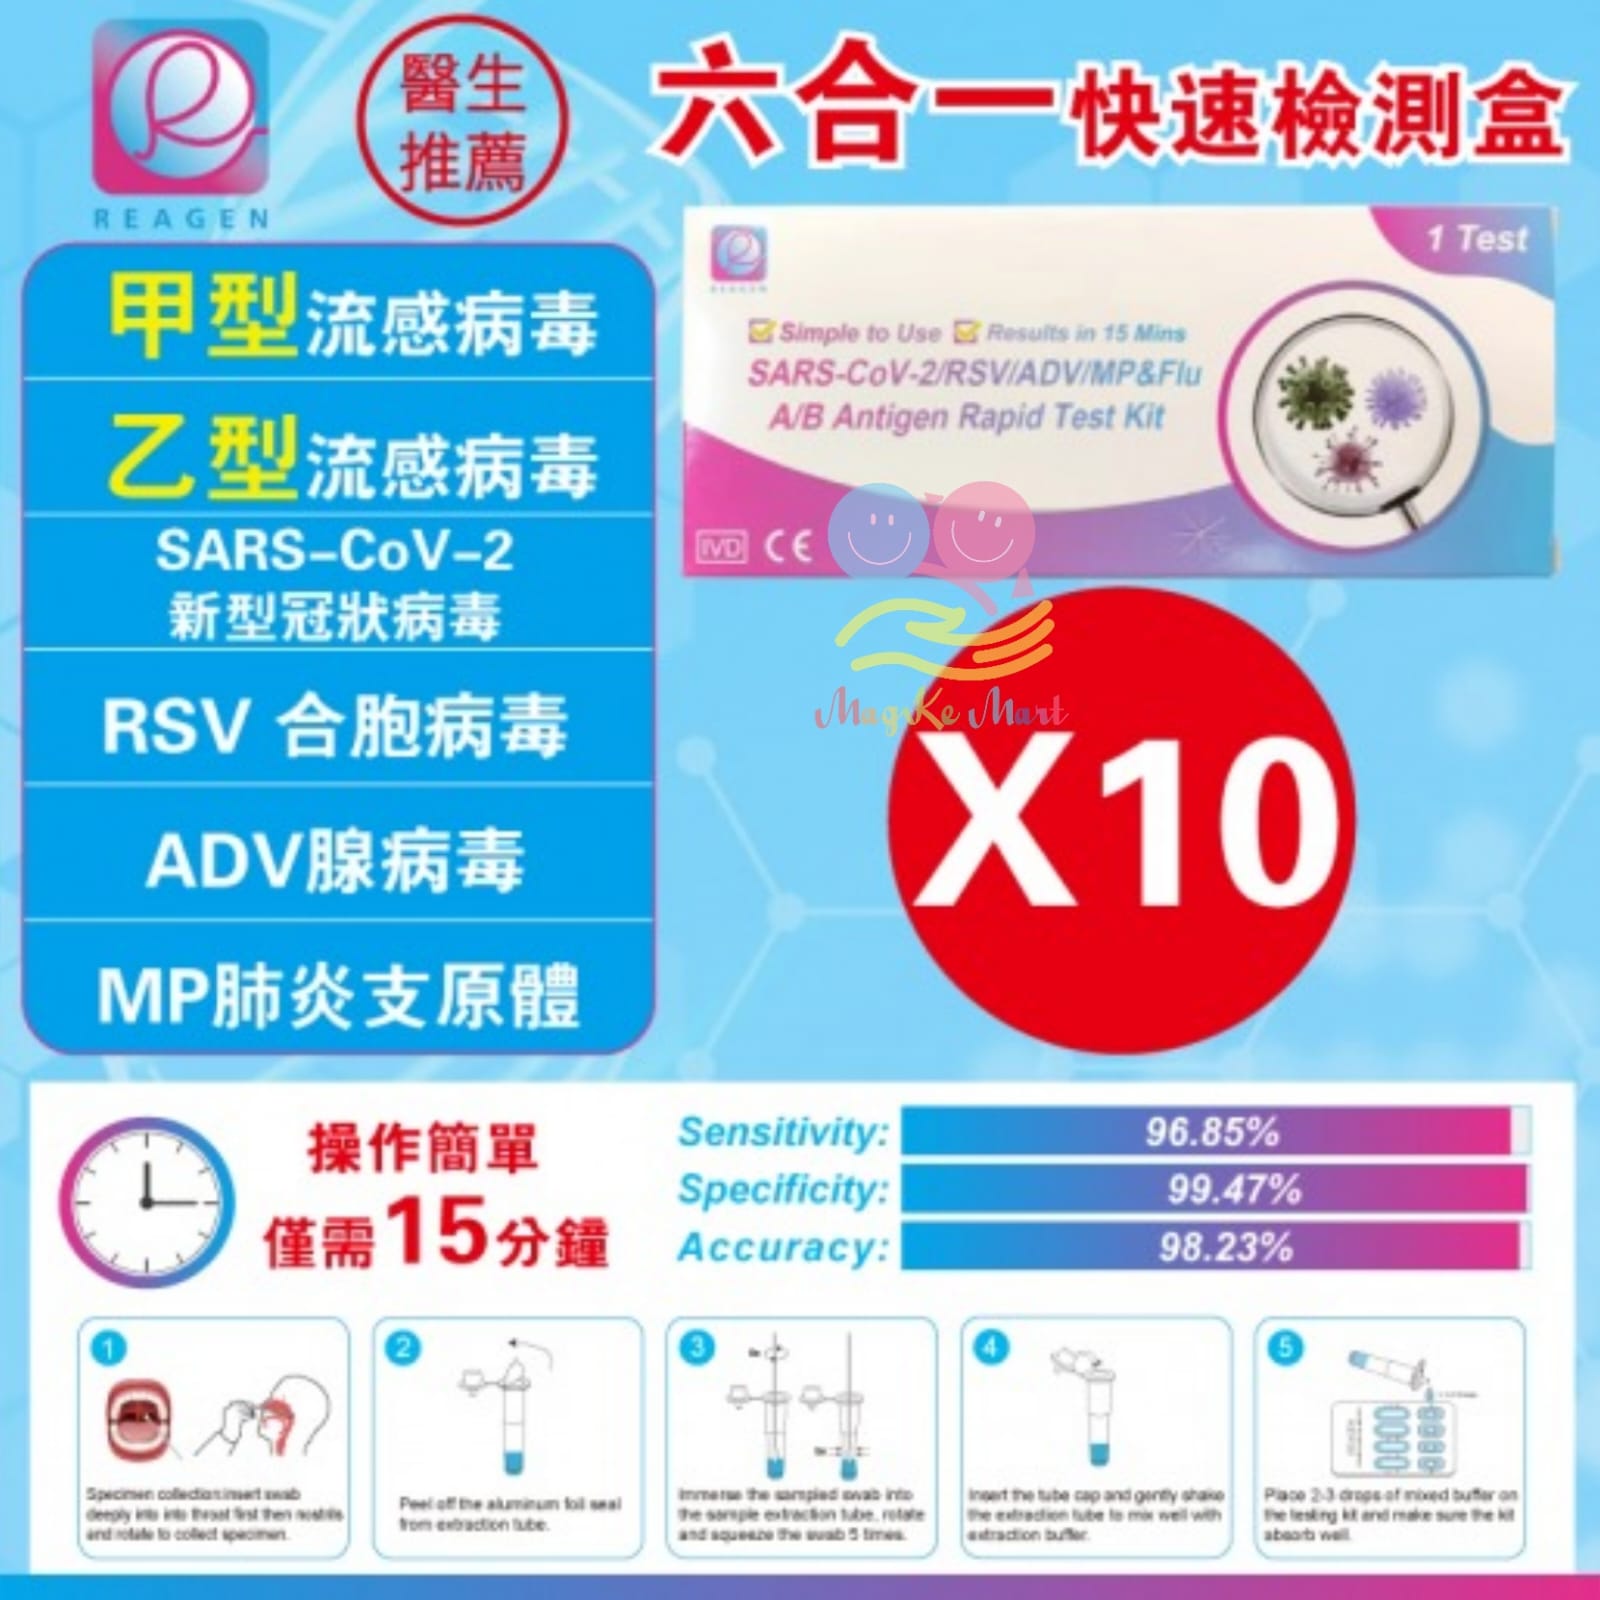 REAGEN(6合1)新冠病毒/甲/⼄型流感/RSV合胞/ADV腺病毒/MP&Flu肺炎快速抗原檢測試劑盒(1套10支)(獨立包裝)